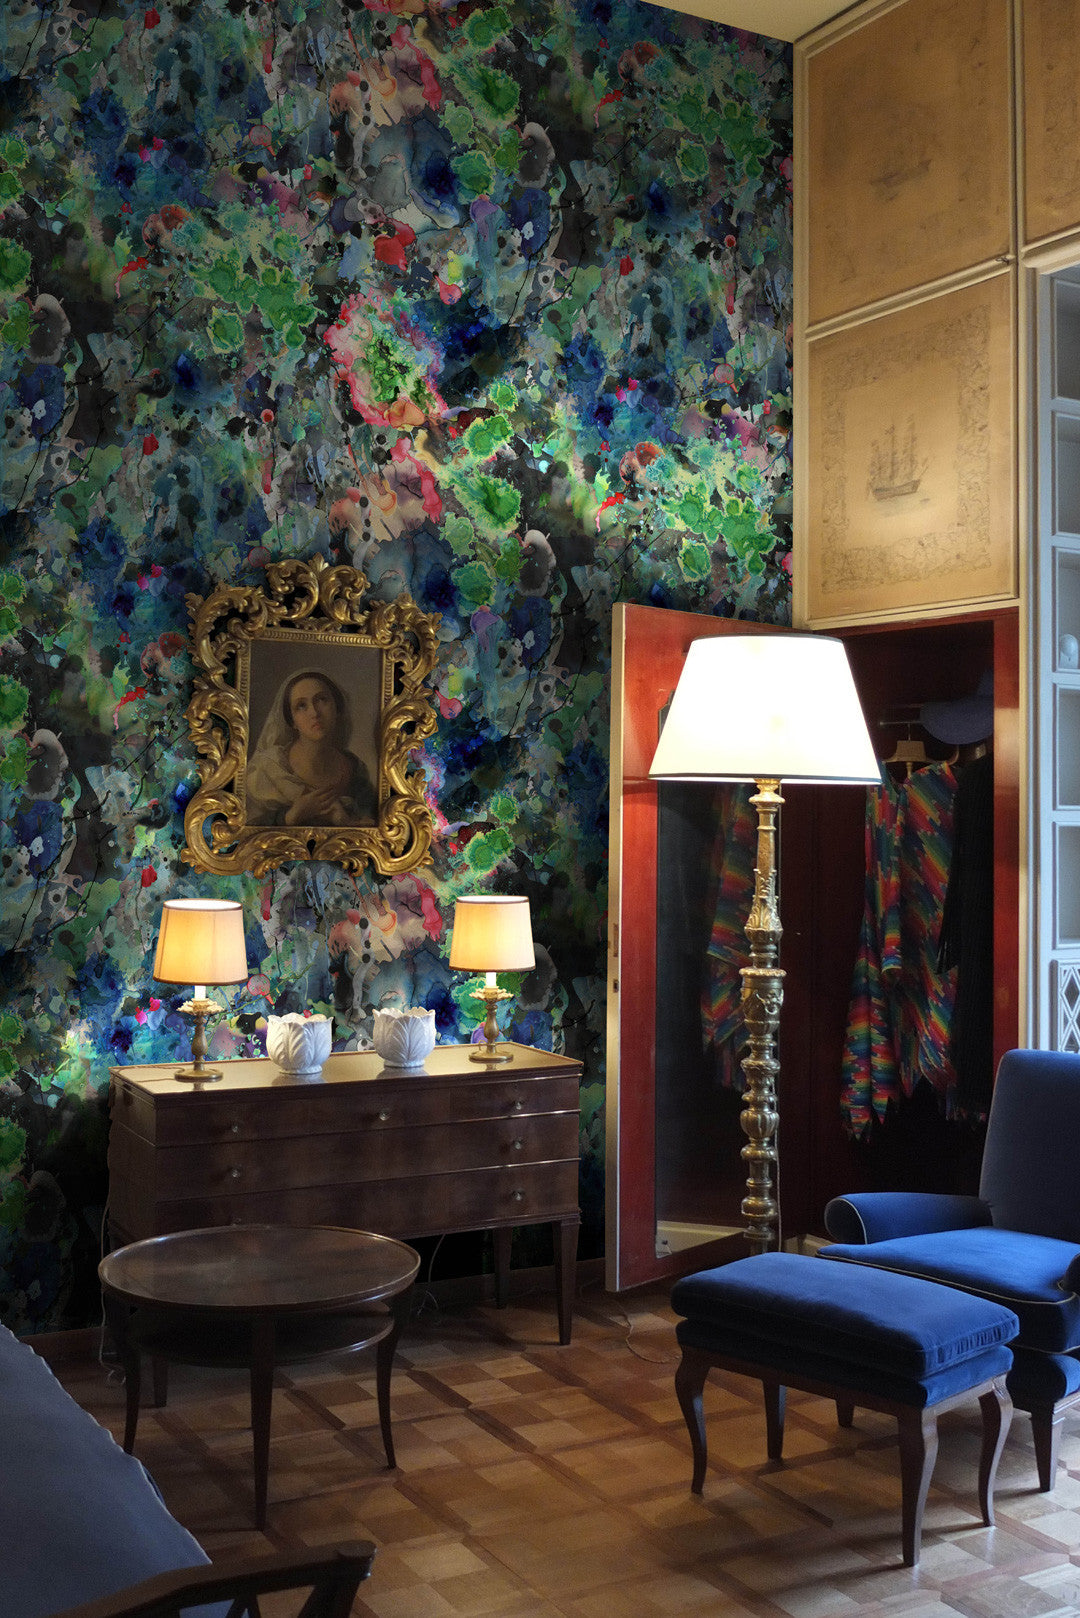 Kaleido Splatt Allover Superwide Room Wallpaper - Multicolor